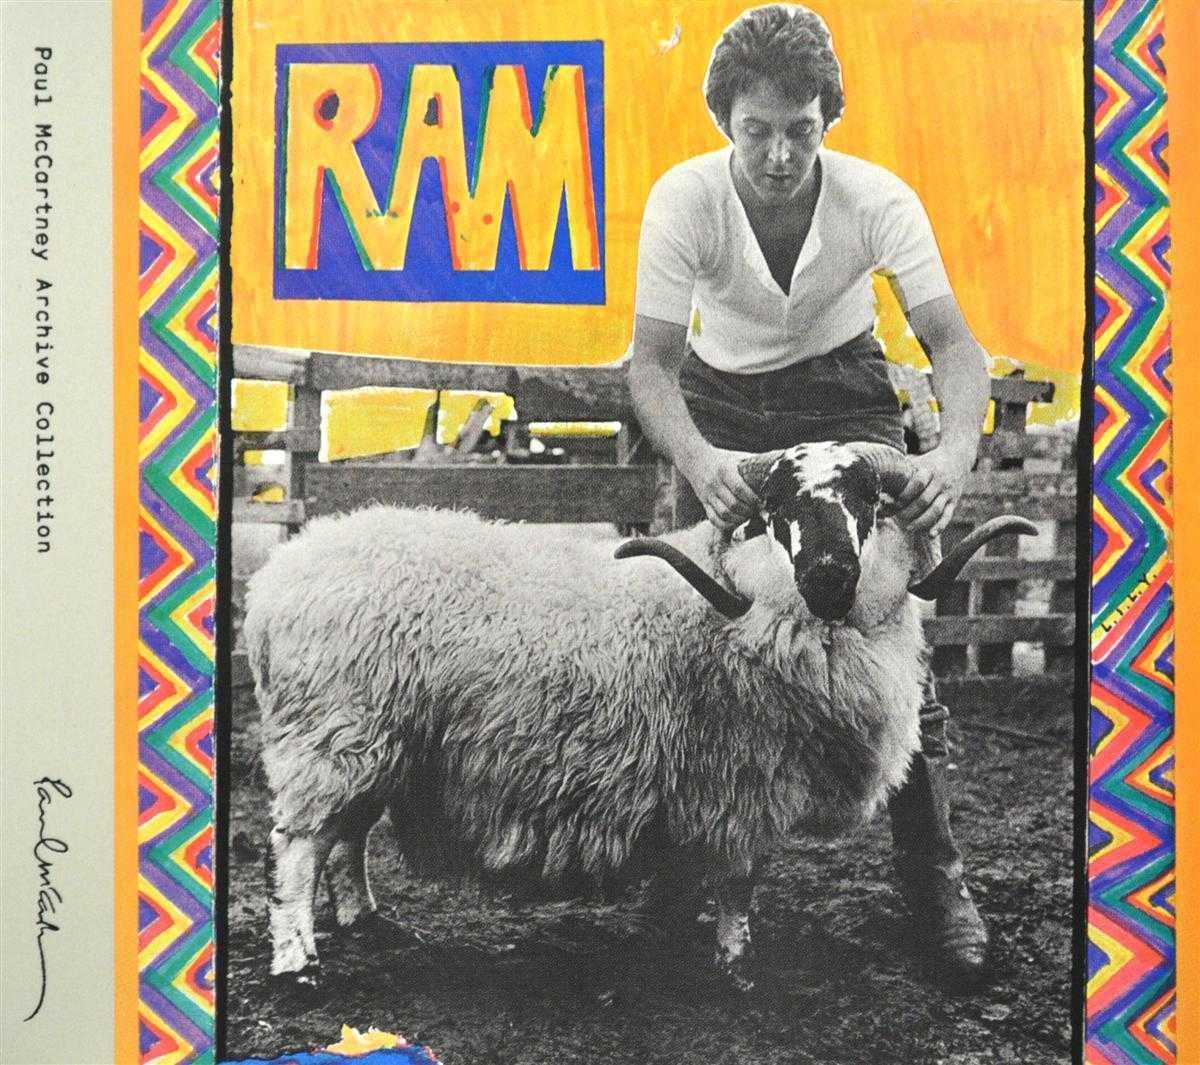 Ram | Paul Mccartney, Linda McCartney